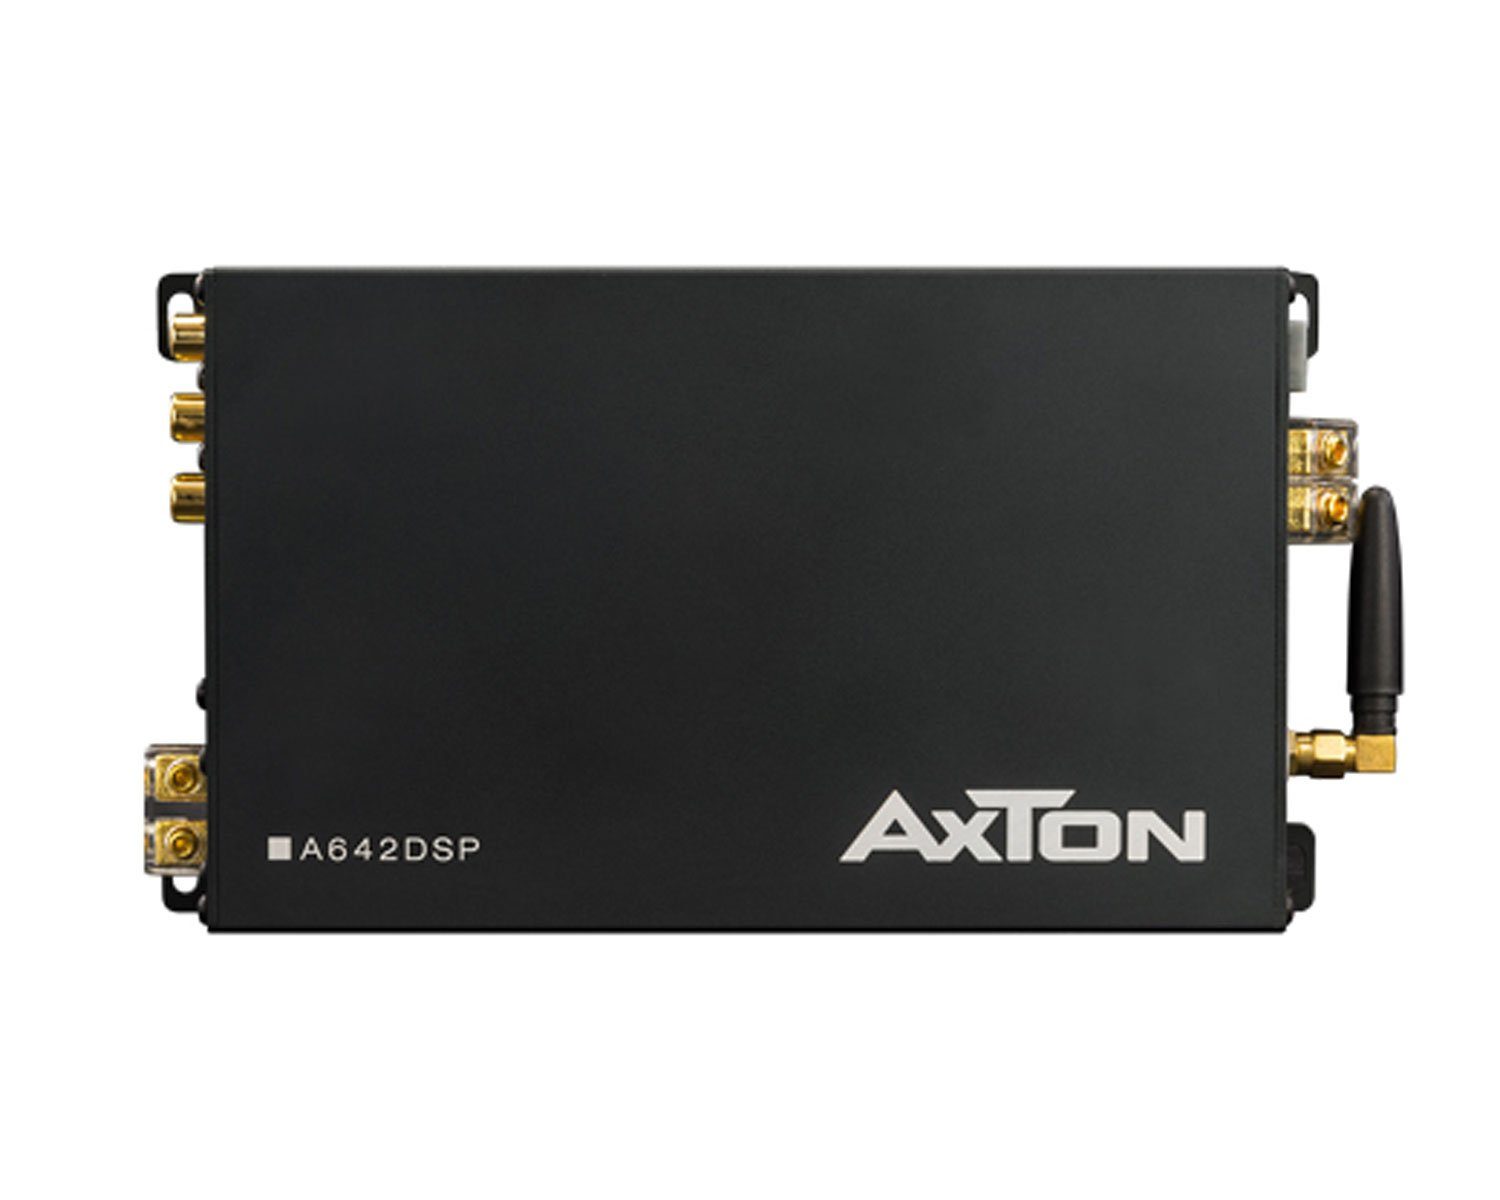 Axton A642DSP DSP-App Verstärker 4x32 + 1x176 Watt Hi-Res Verstärker